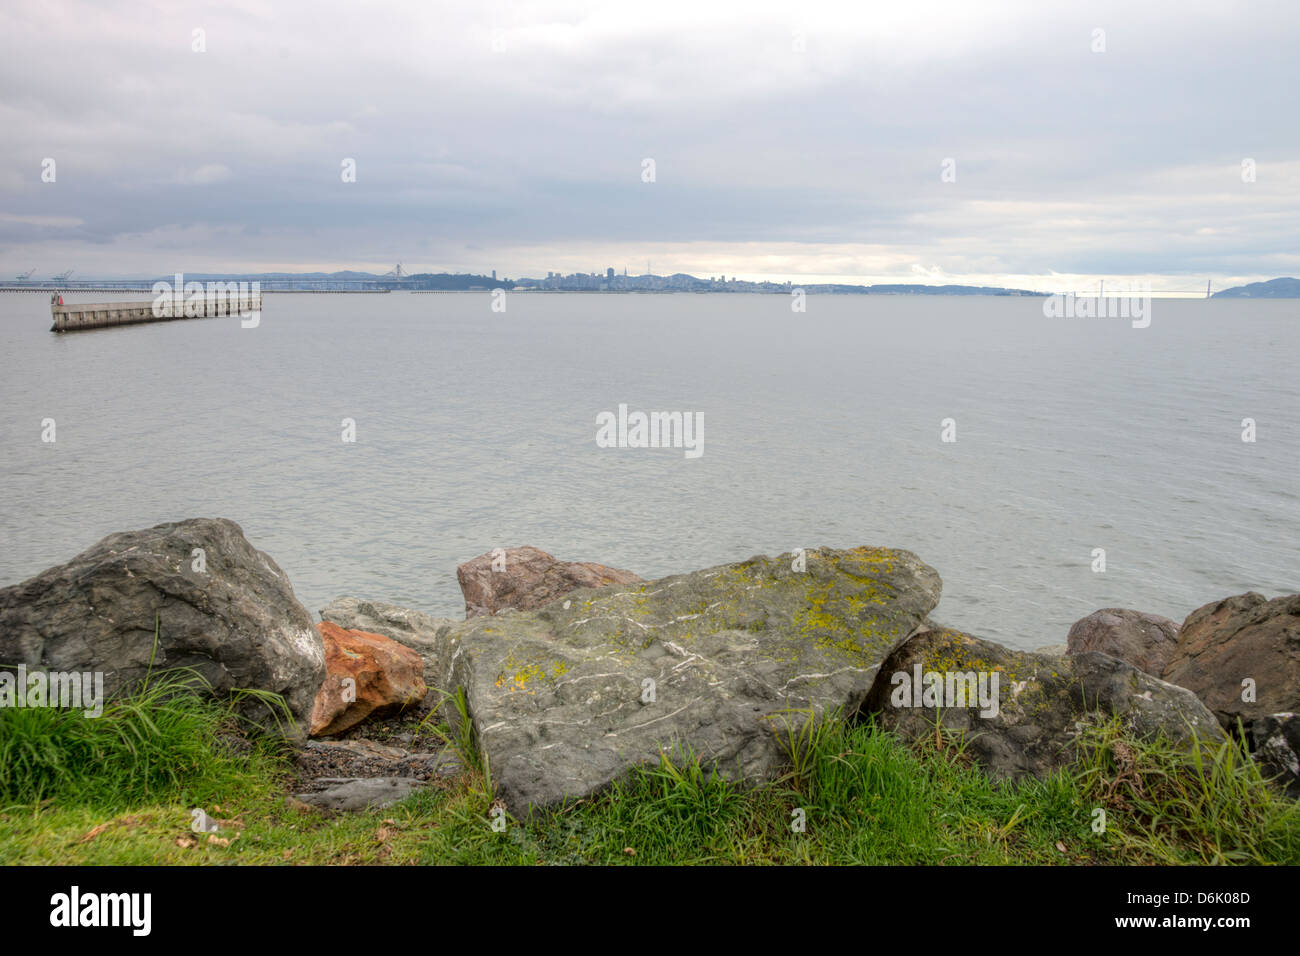 Scenic immagine HDR di costa rocciosa vicino a Marina di Berkeley nella Baia di San Francisco. Golden Gate Bridge in background Foto Stock